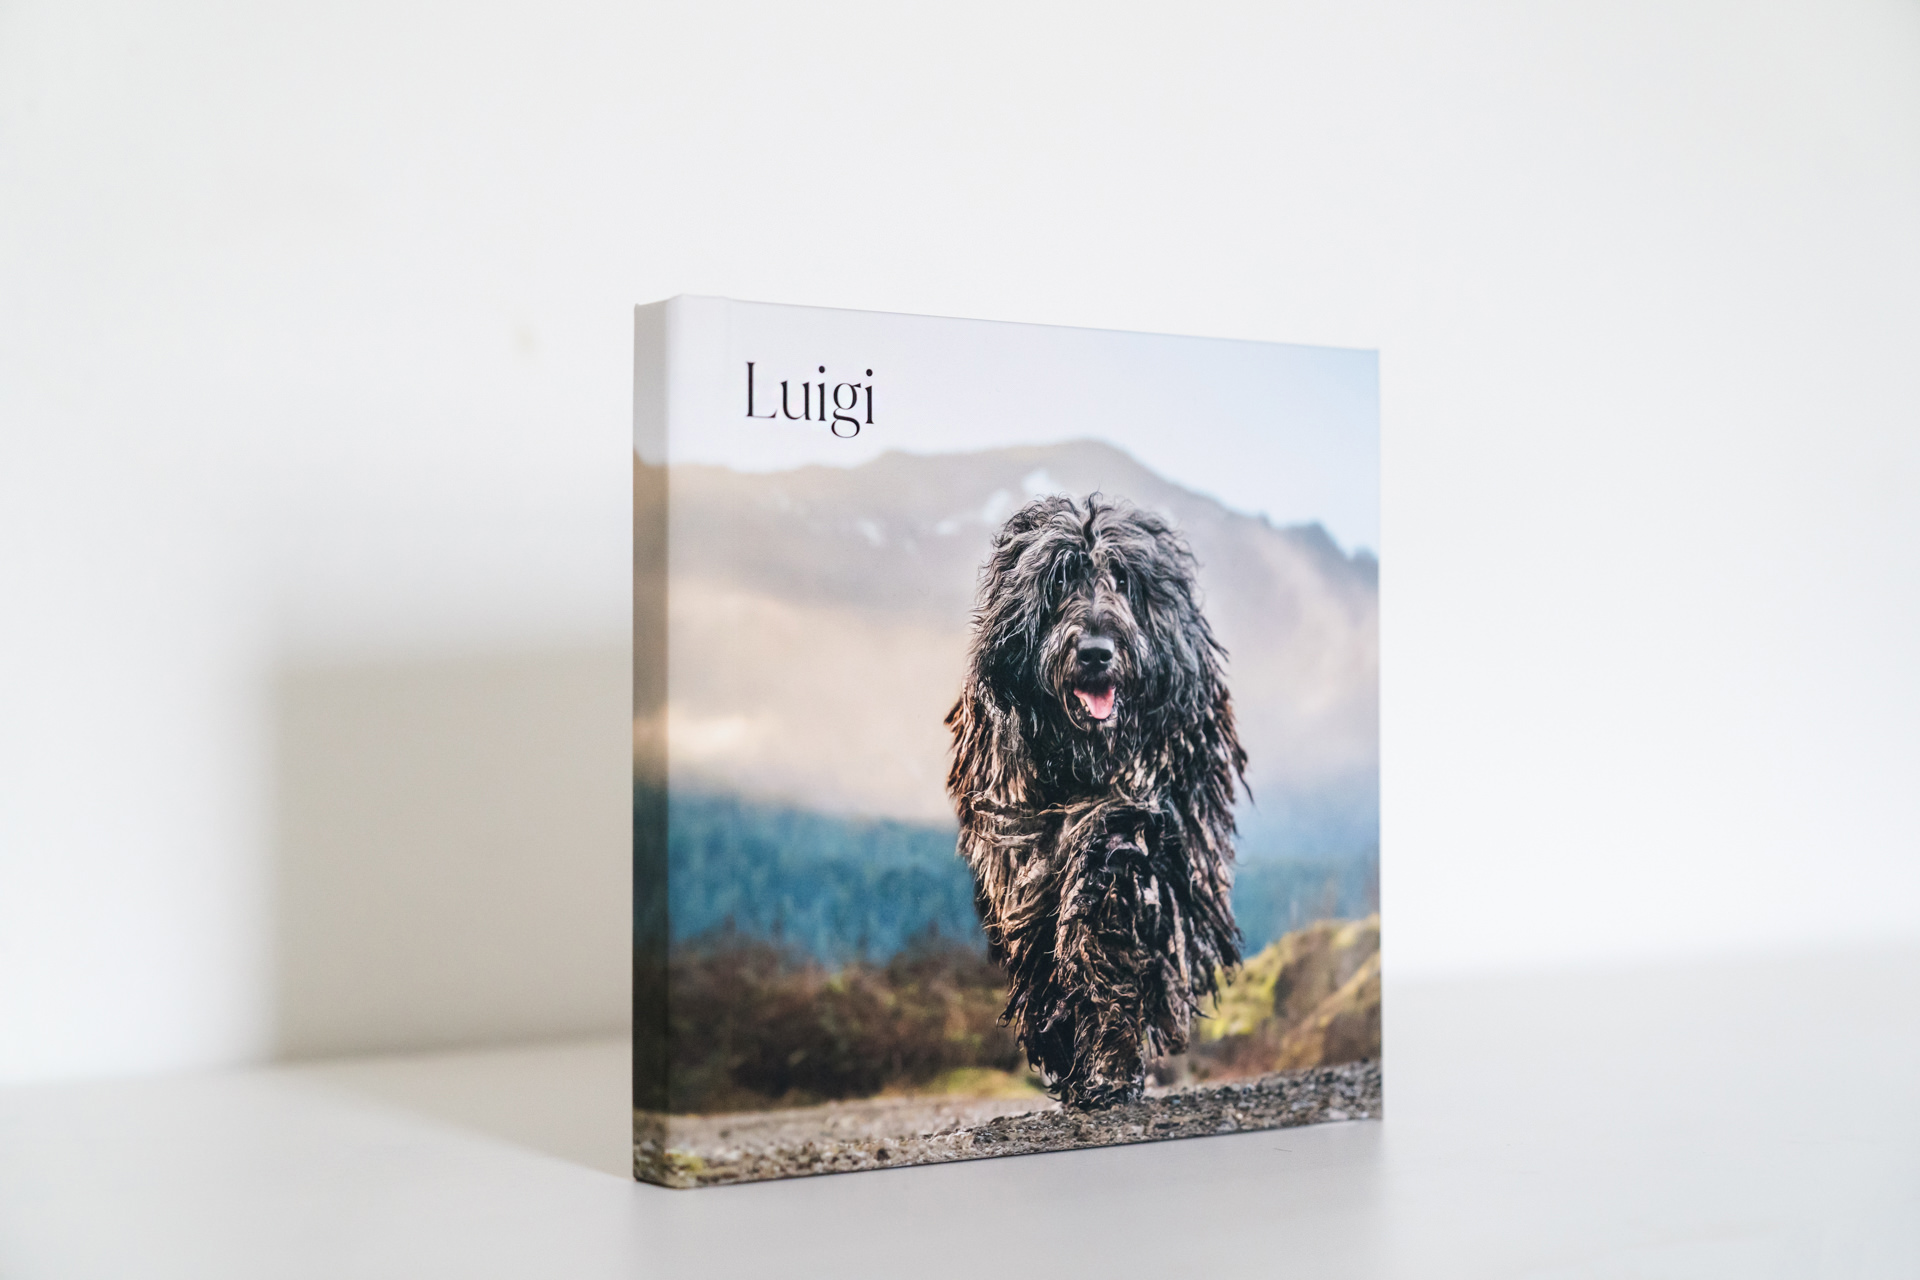 Photobook cover with a happy shaggy dog named Luigi.